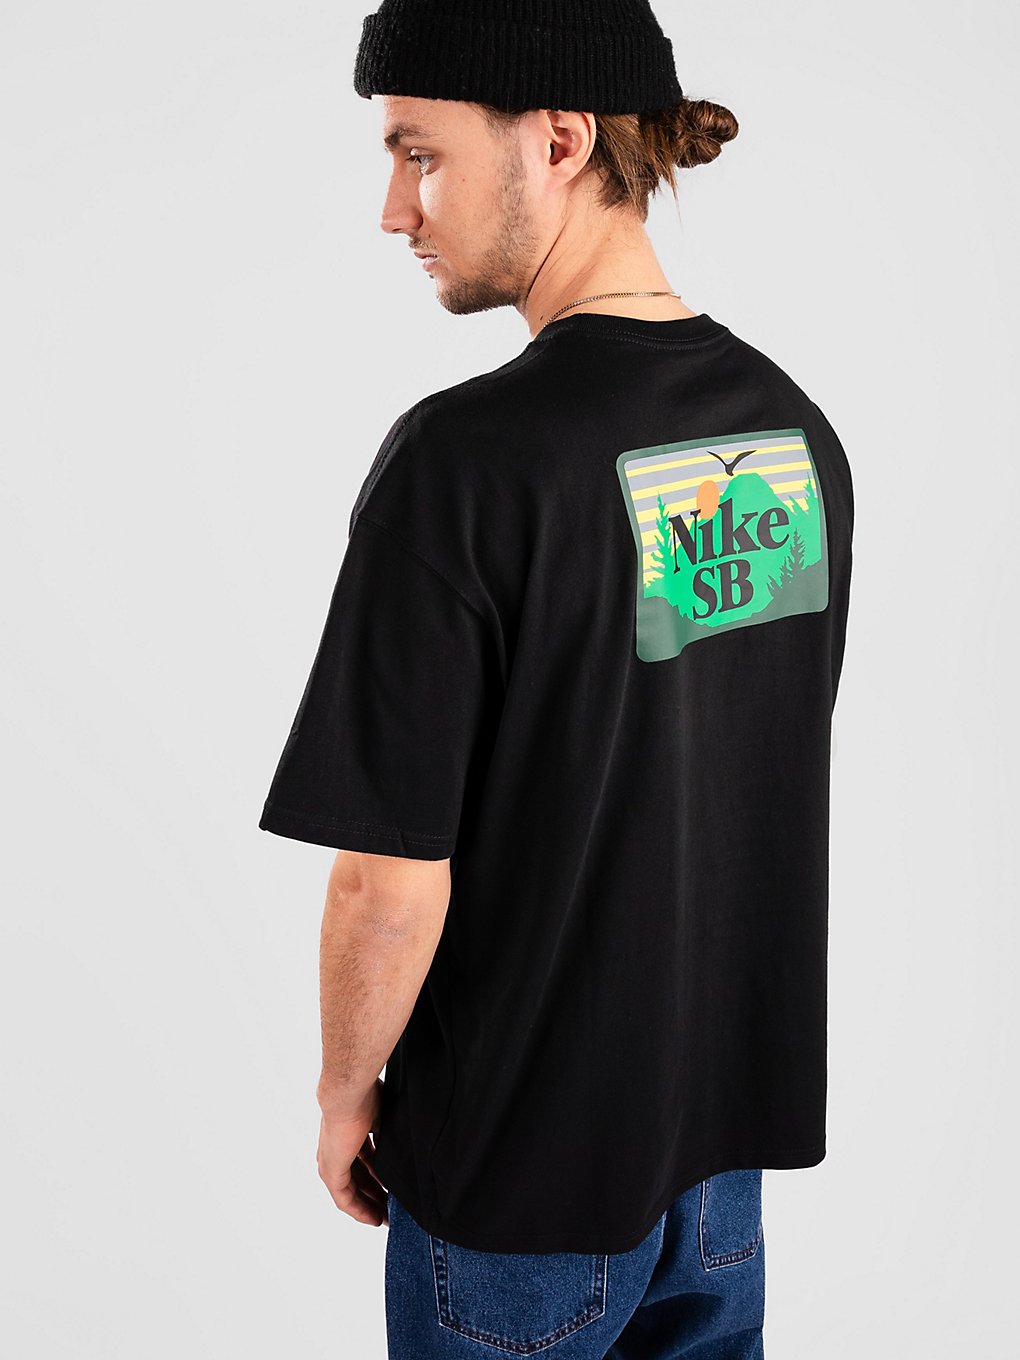 Nike SB Approach T-Shirt svart